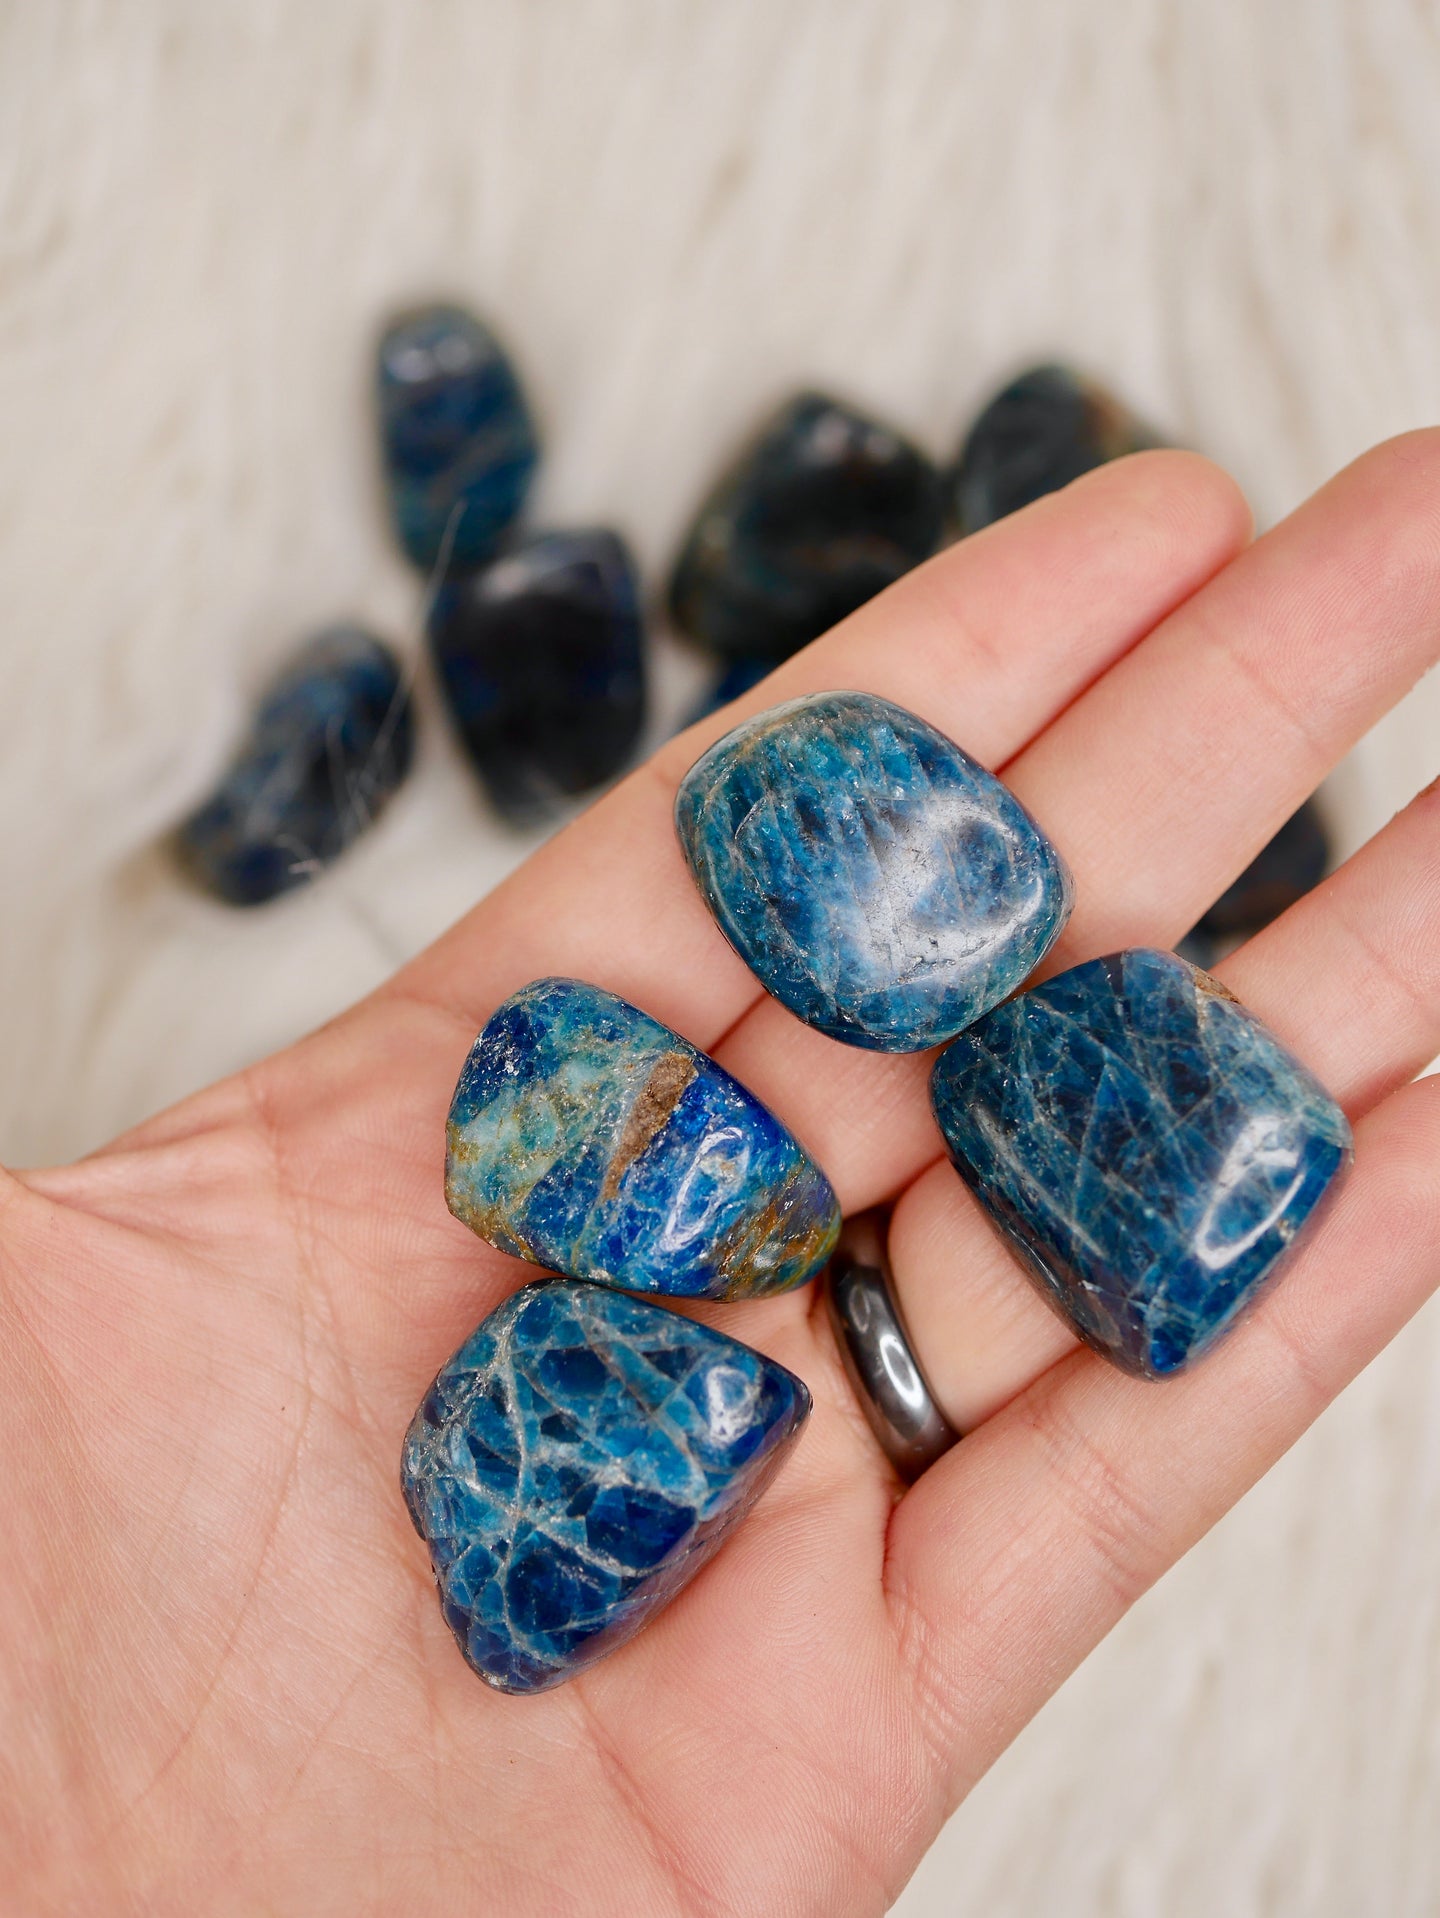 Blue apatite tumbled stones